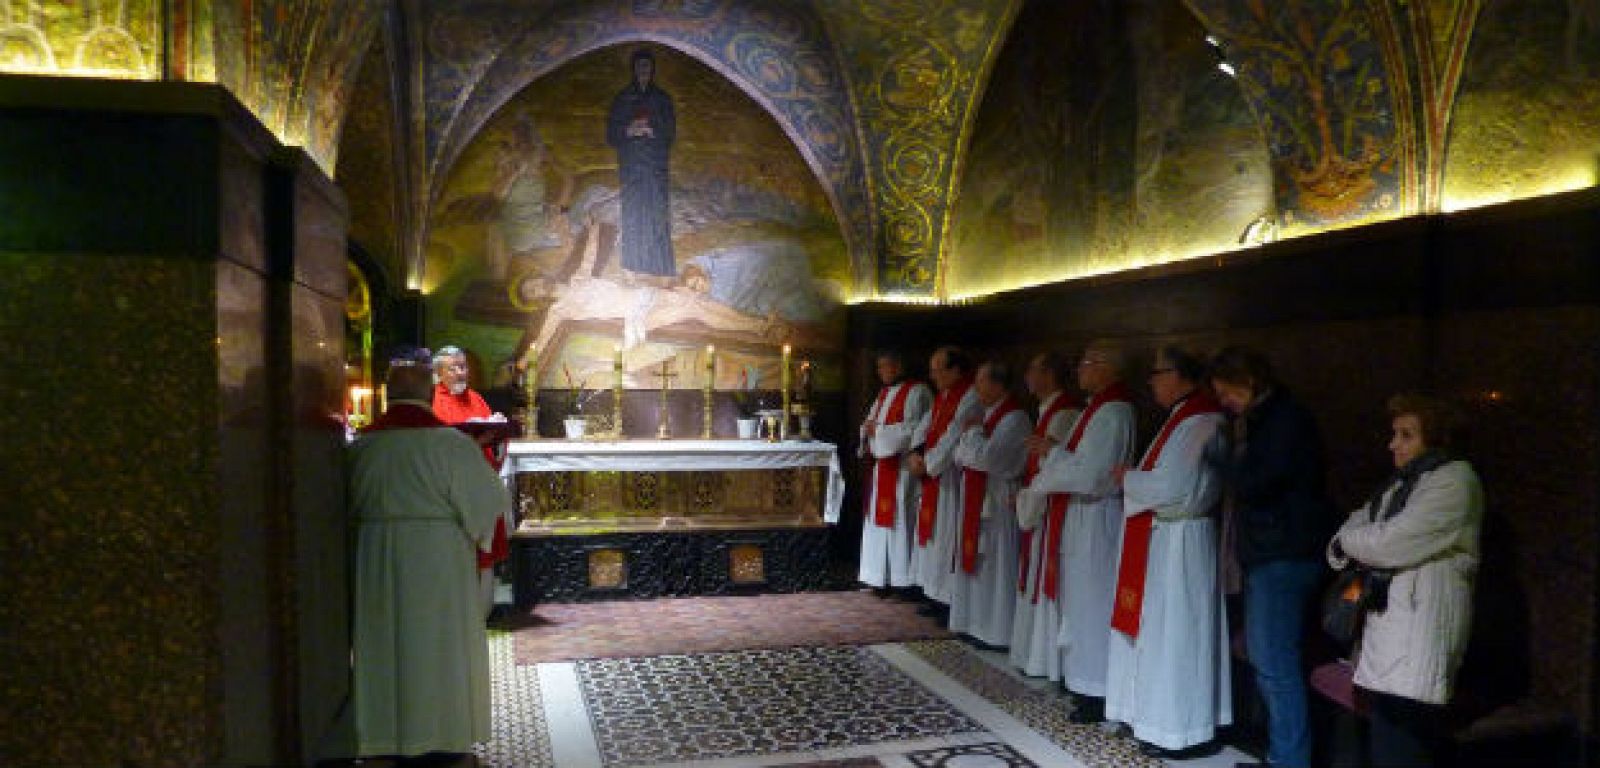 El Centro de Tierra Santa en Madrid depende directamente de la Custodia franciscana y lleva más de treinta años organizando peregrinaciones desde España a los santos lugares.